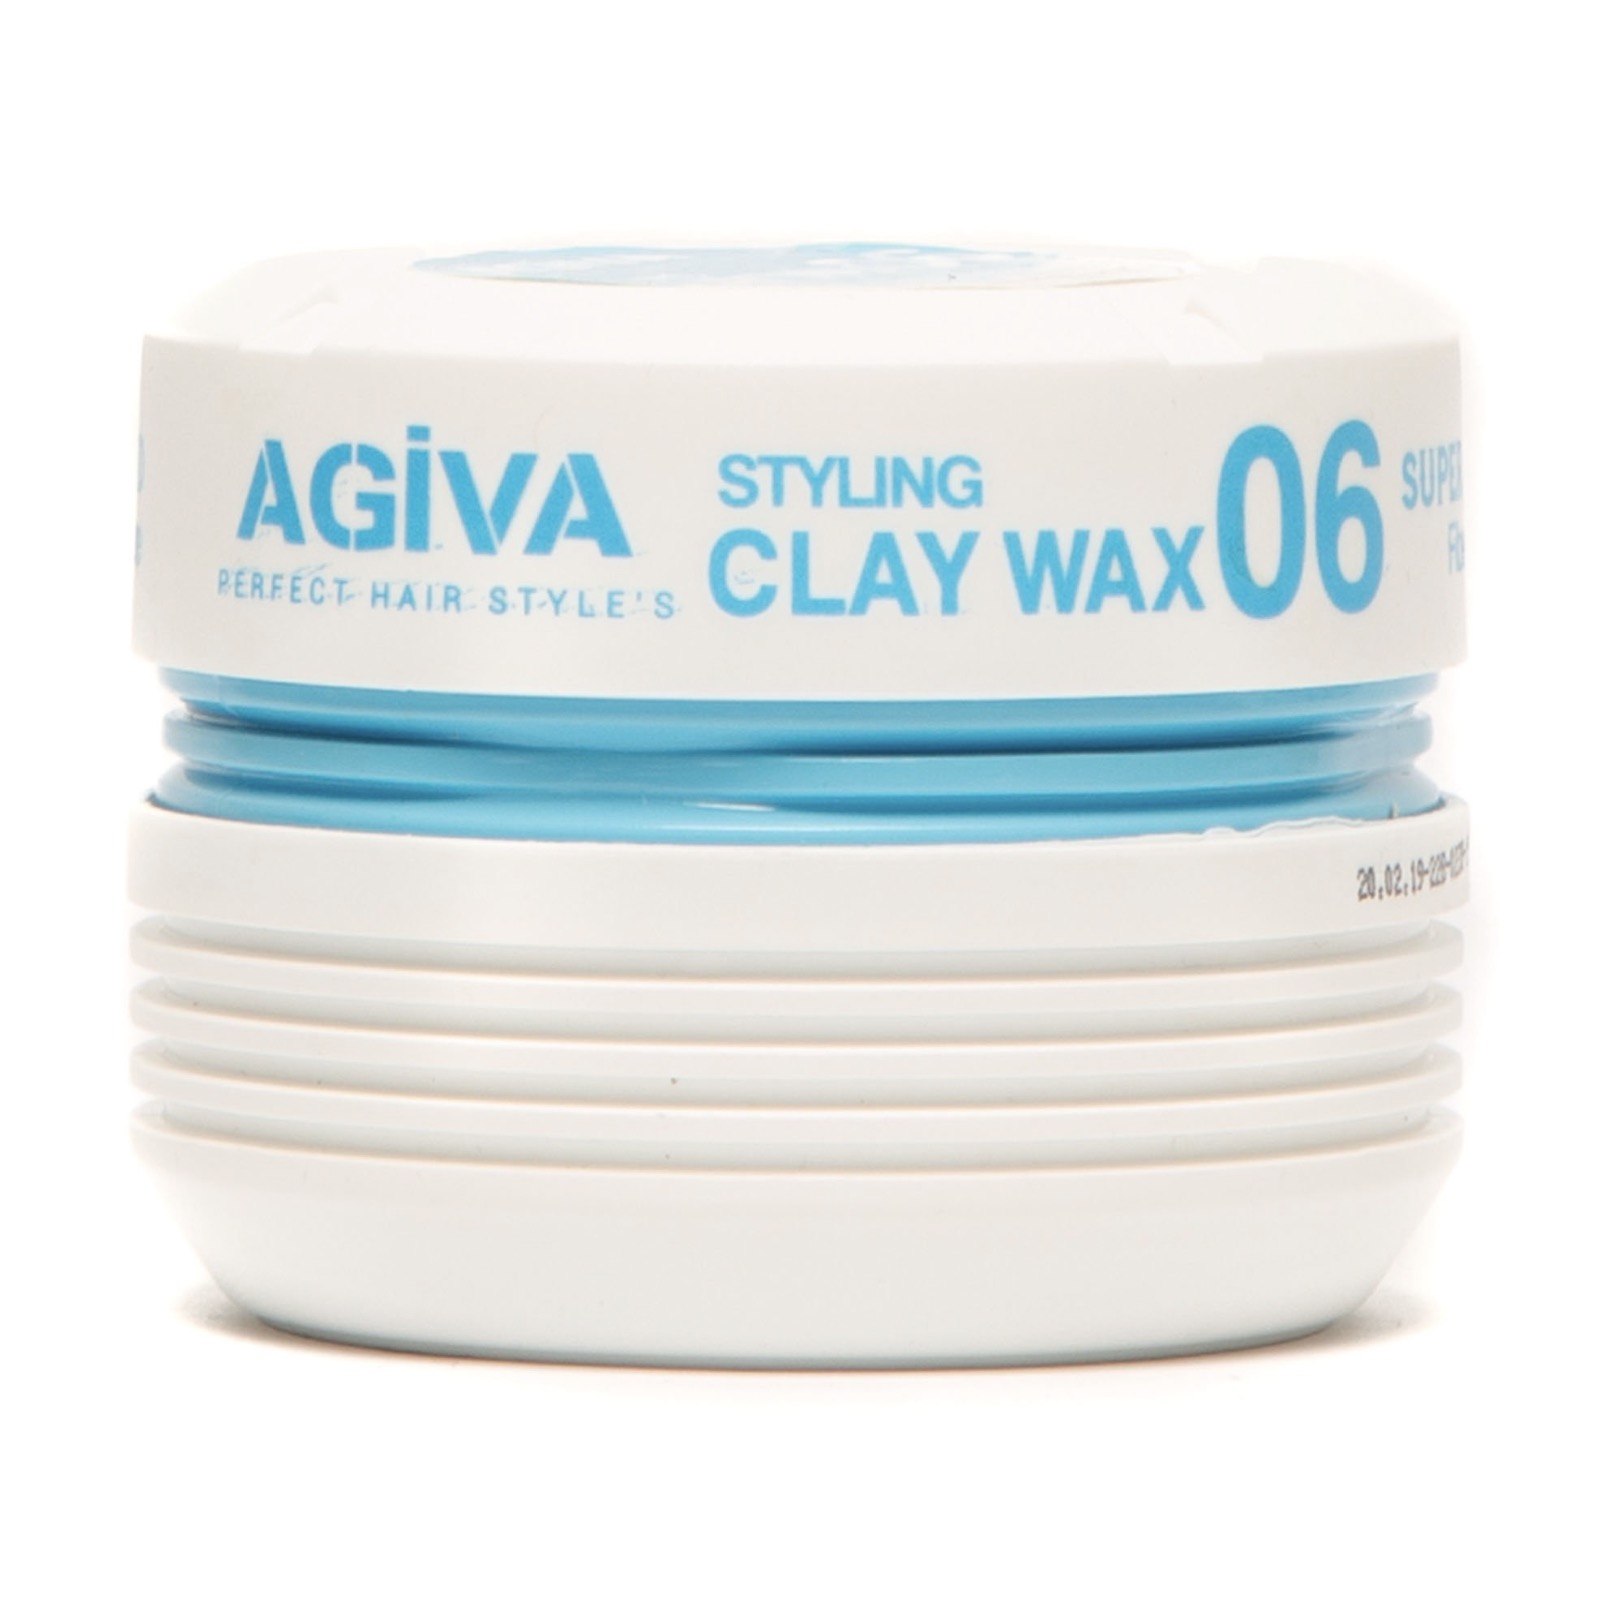 AGIVA 06 Styling Clay Wax 175 ml